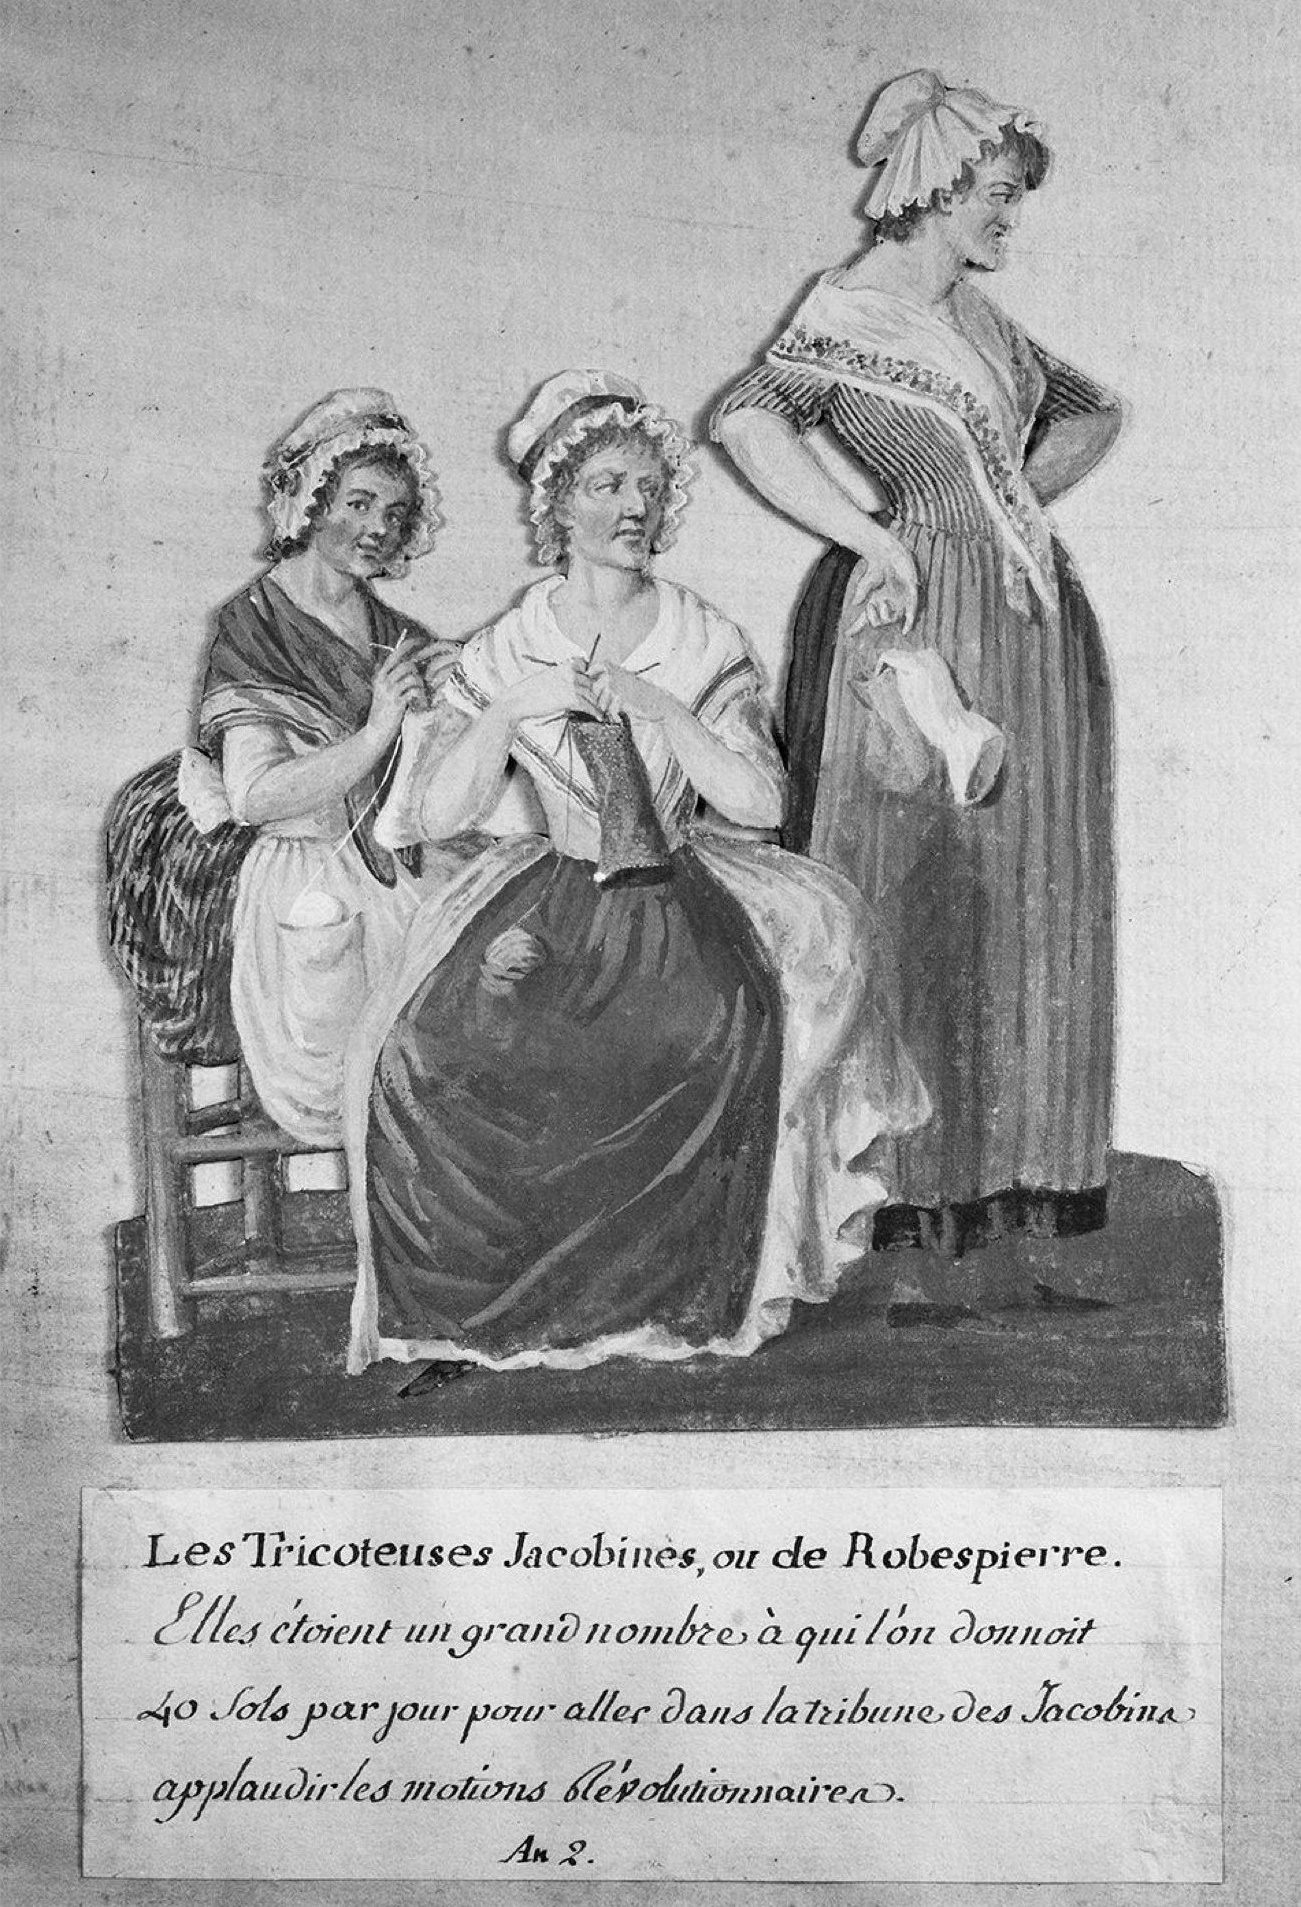 Les Tricoteuses jacobines ou de Robespierre